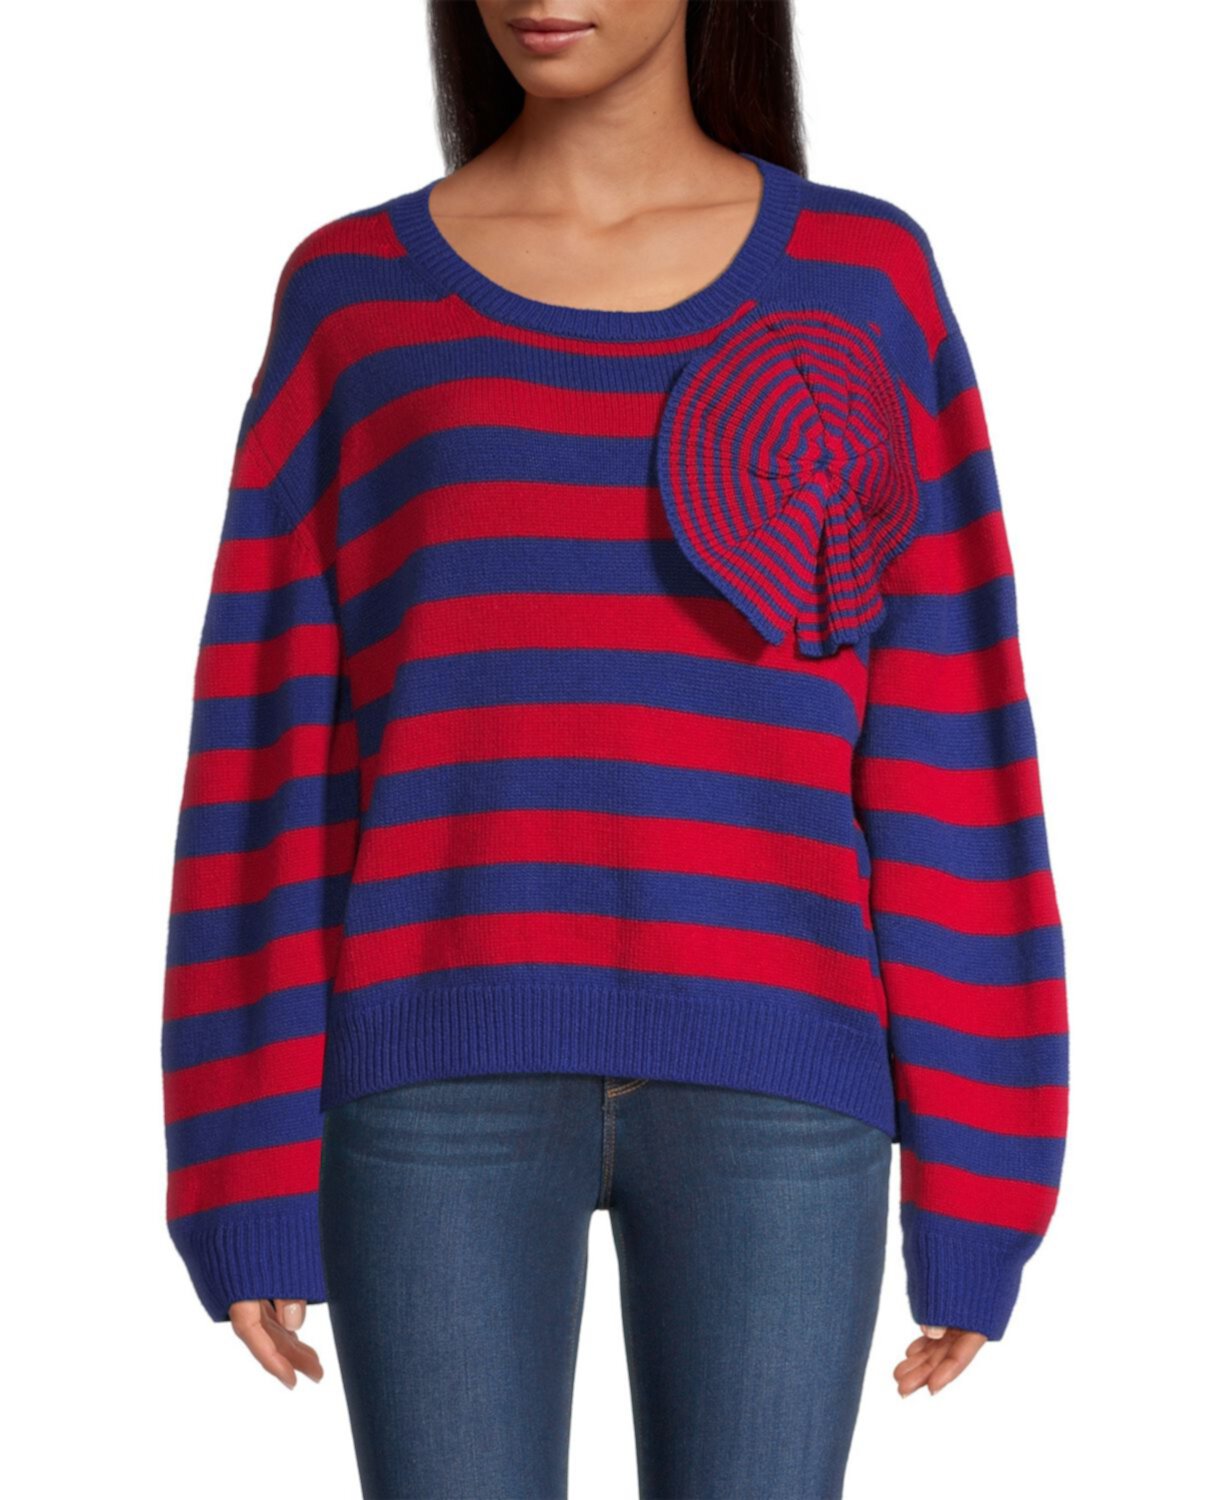 Полосатый свитер с аппликацией Stella Jean